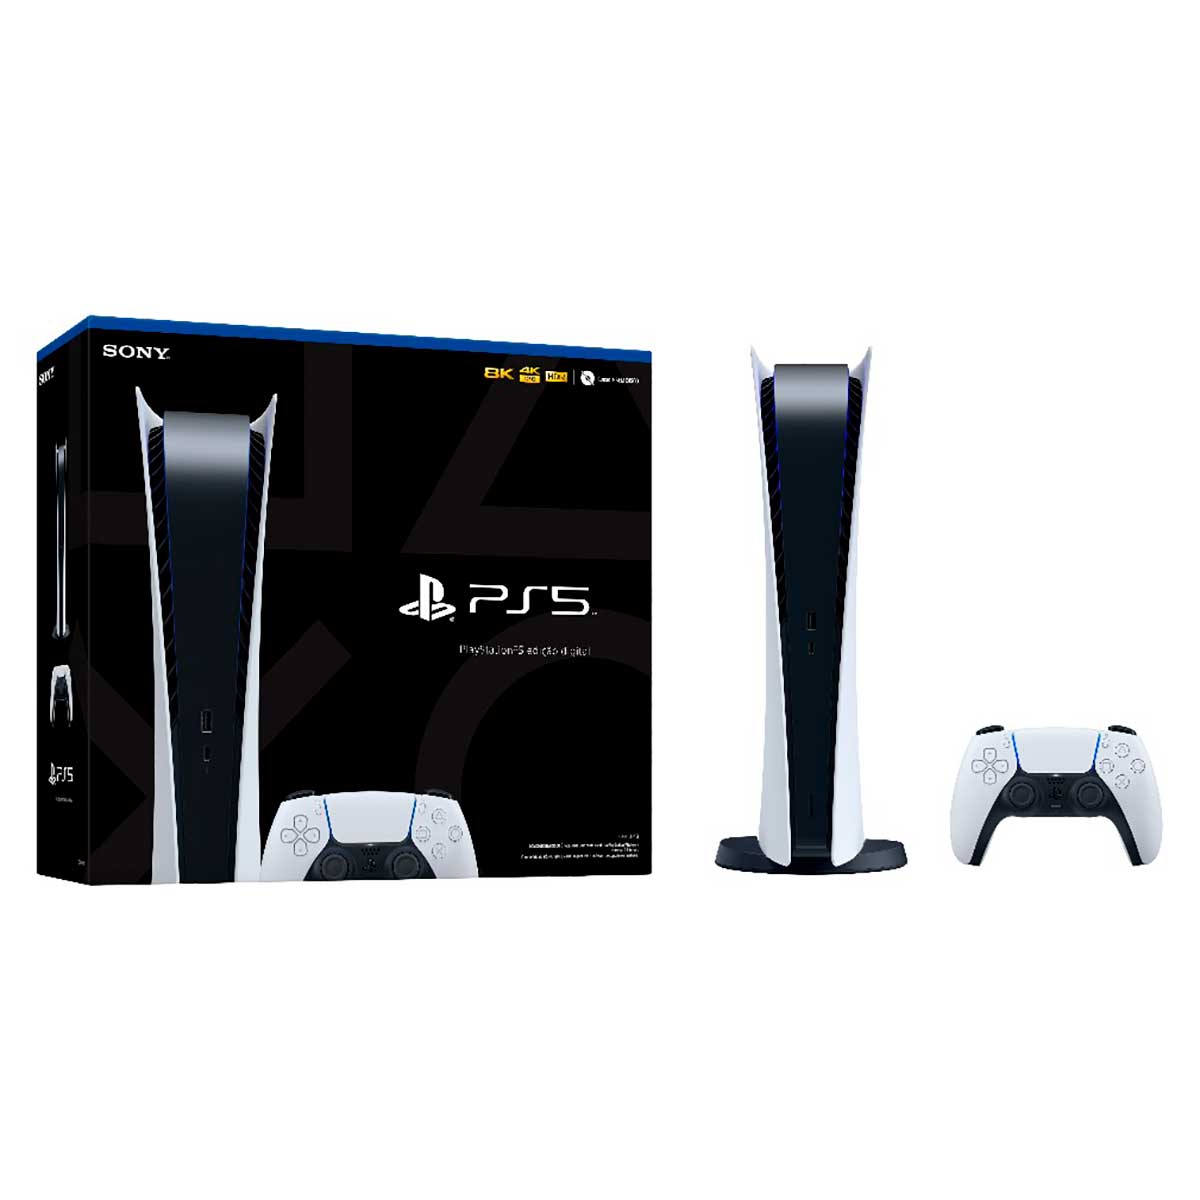 Console Playstation 5 - PS5 em Promoção no Oferta Esperta